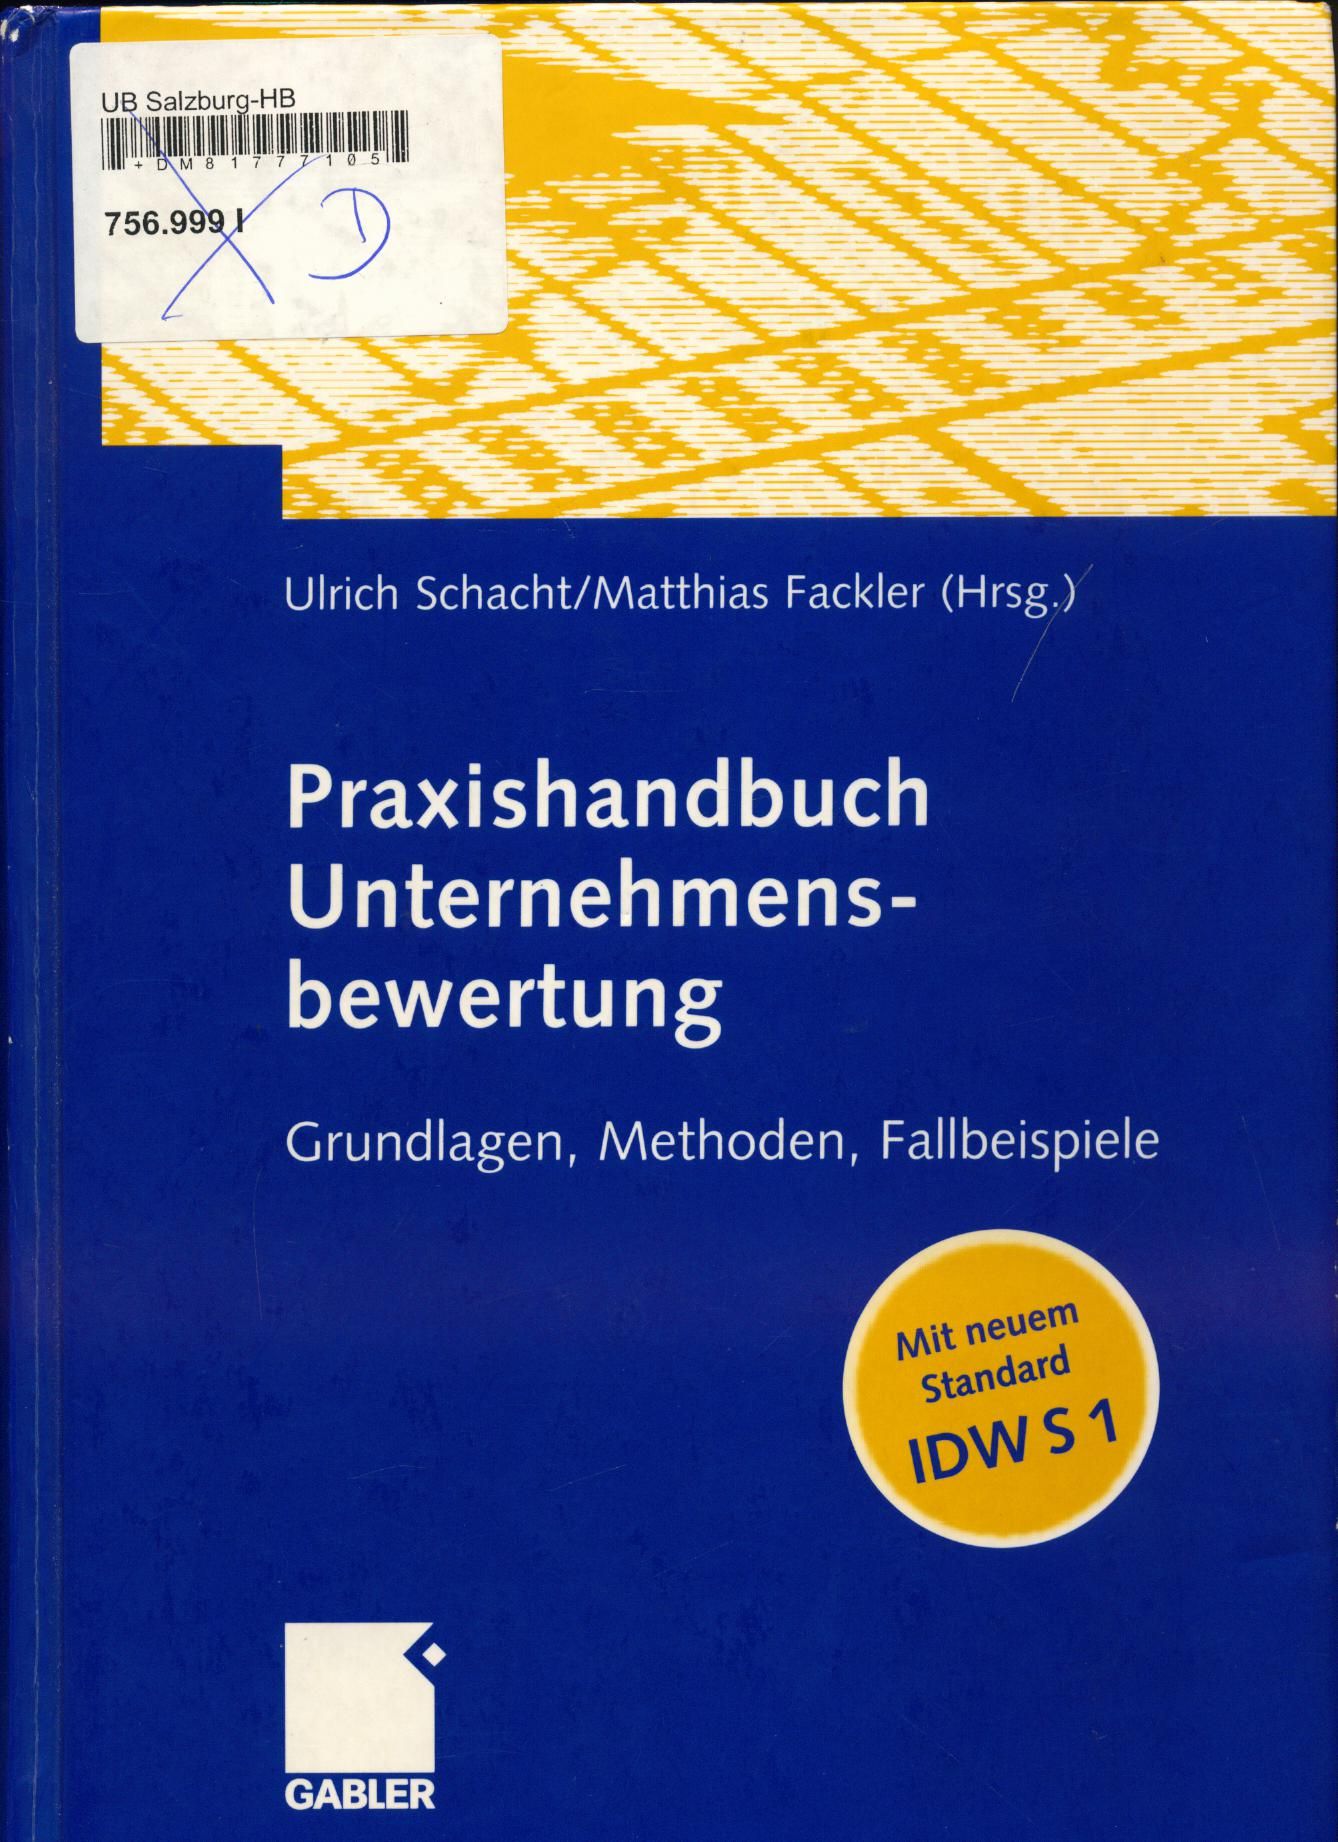 Praxishandbuch Unternehmensbewertung Grundlagen, Methoden, Fallbeispiele - Schacht, Ulrich und Matthias Fackler